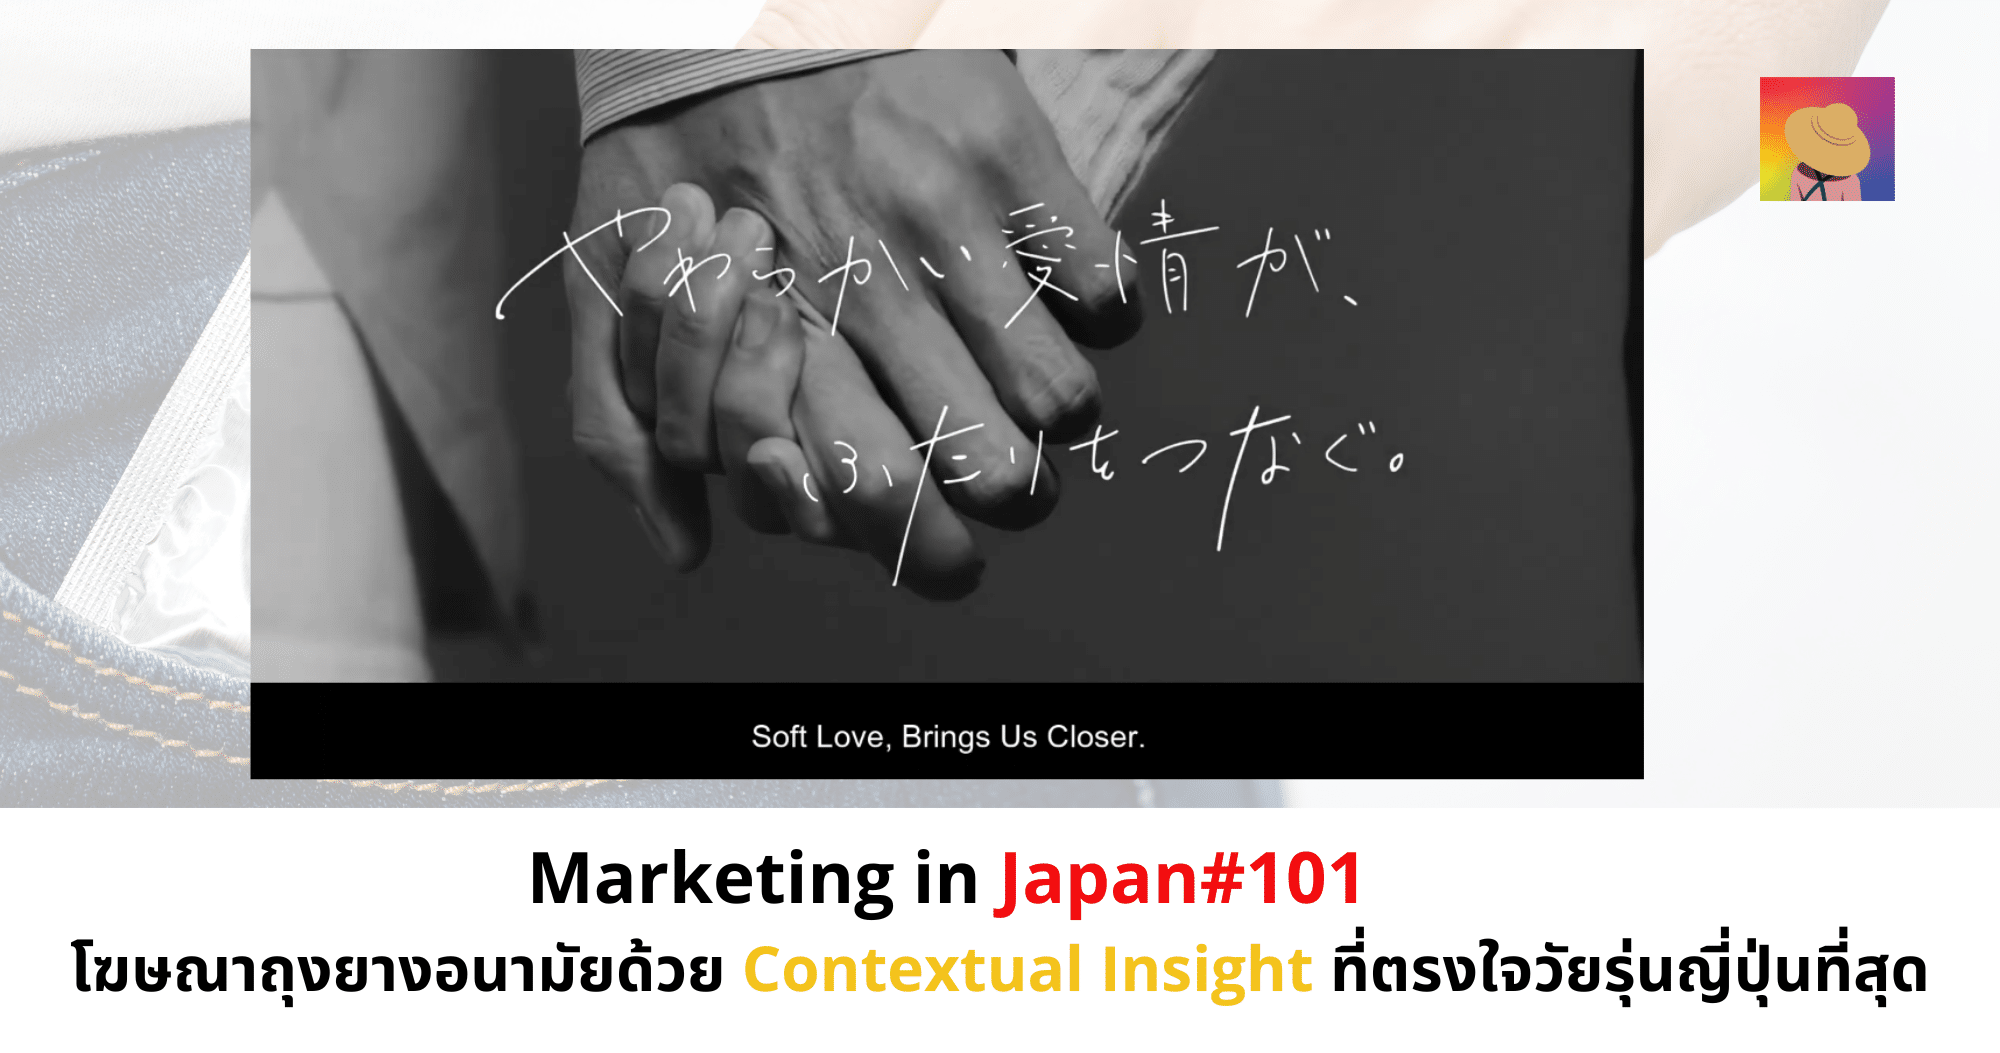 โฆษณาถุงยางอนามัยด้วย Contextual Insight ที่ตรงใจวัยรุ่นญี่ปุ่นที่สุด